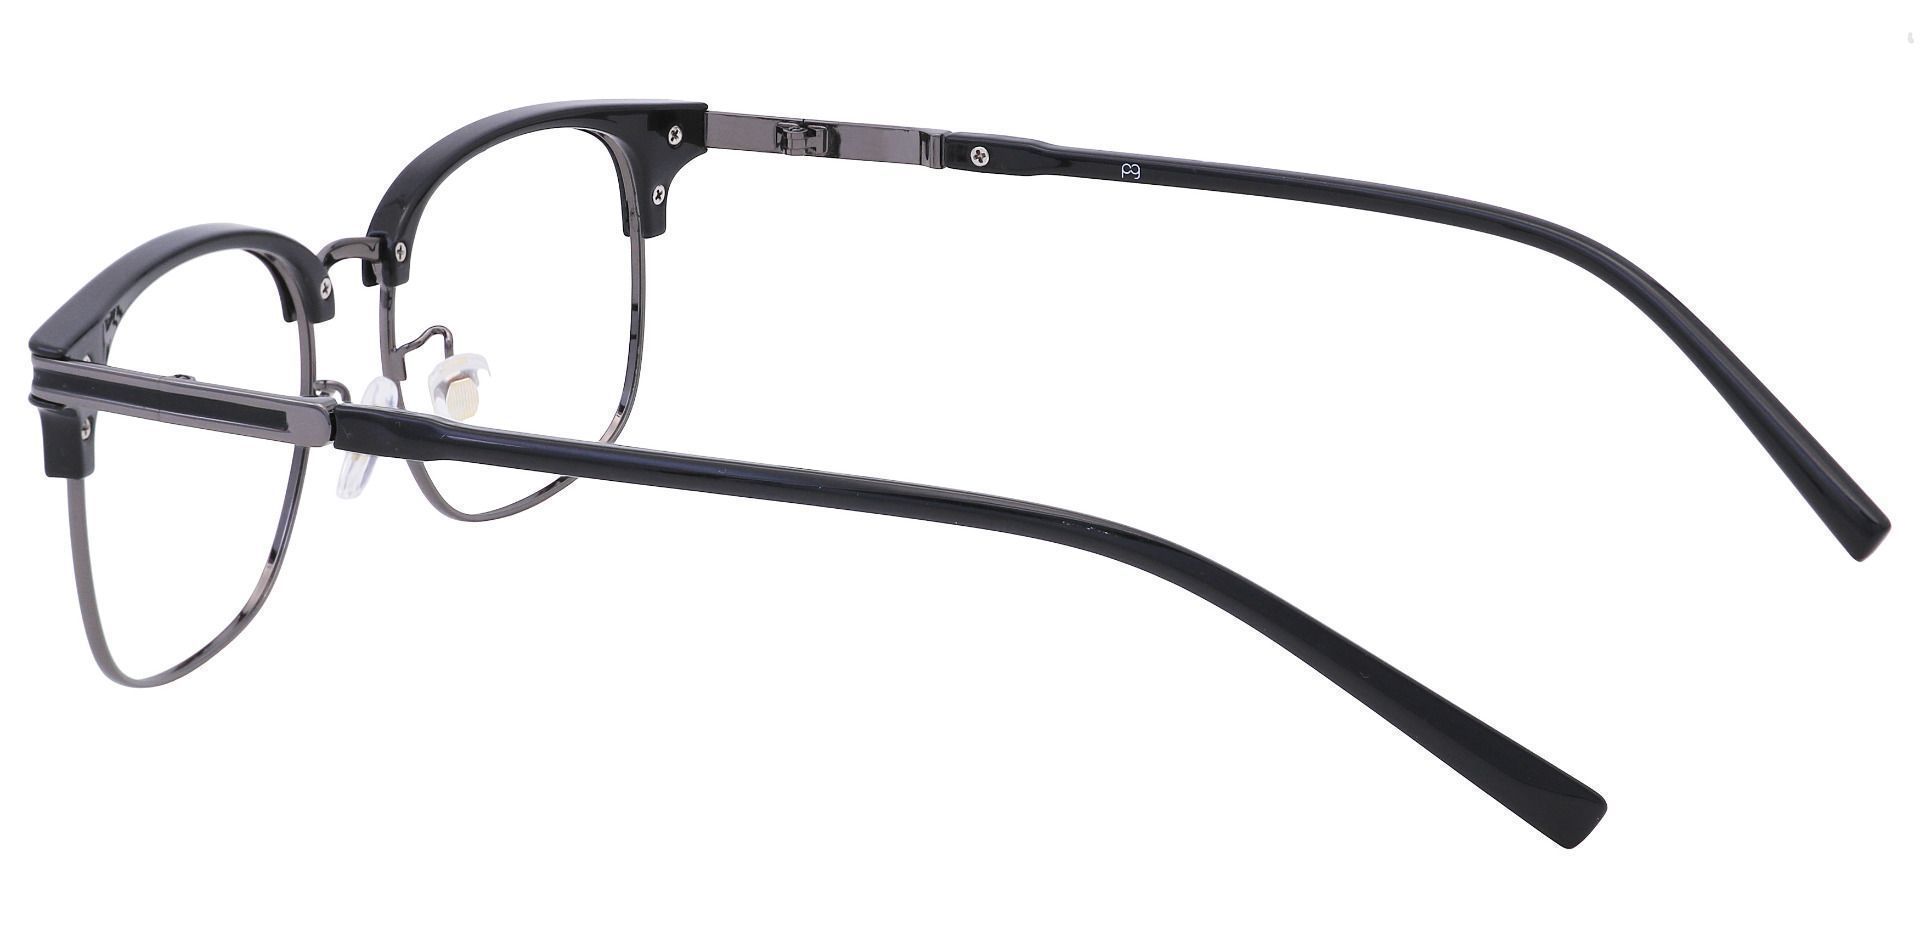 Cafe Browline Eyeglasses Frame - Black